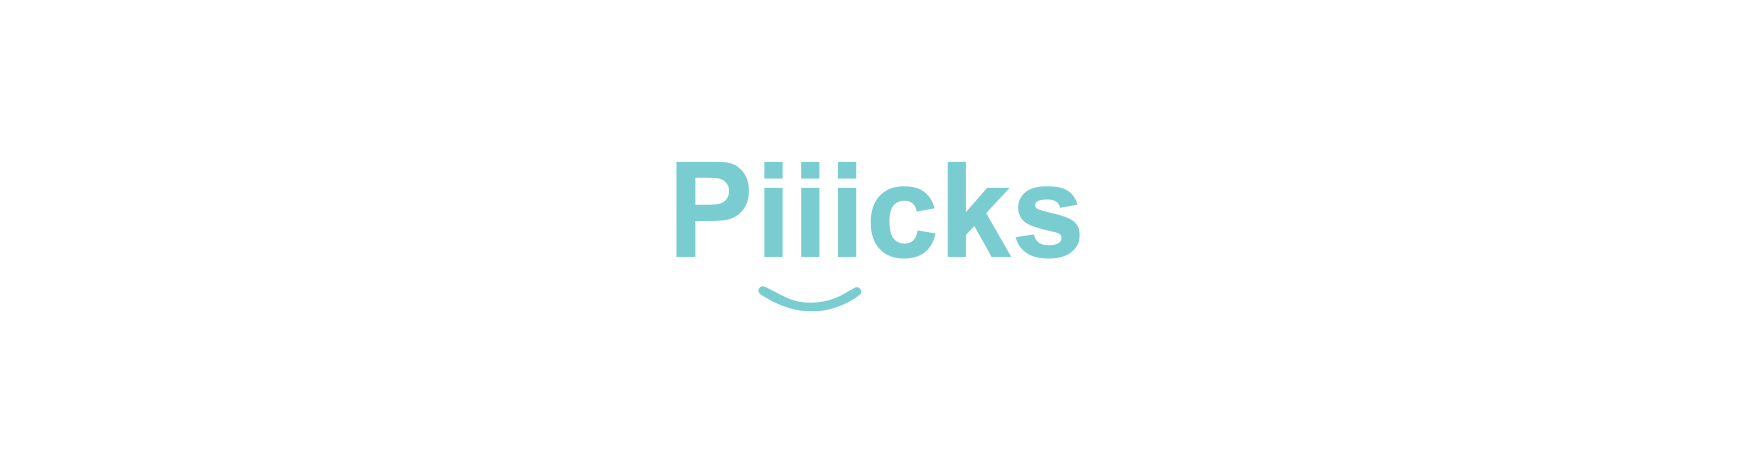 Piiicks